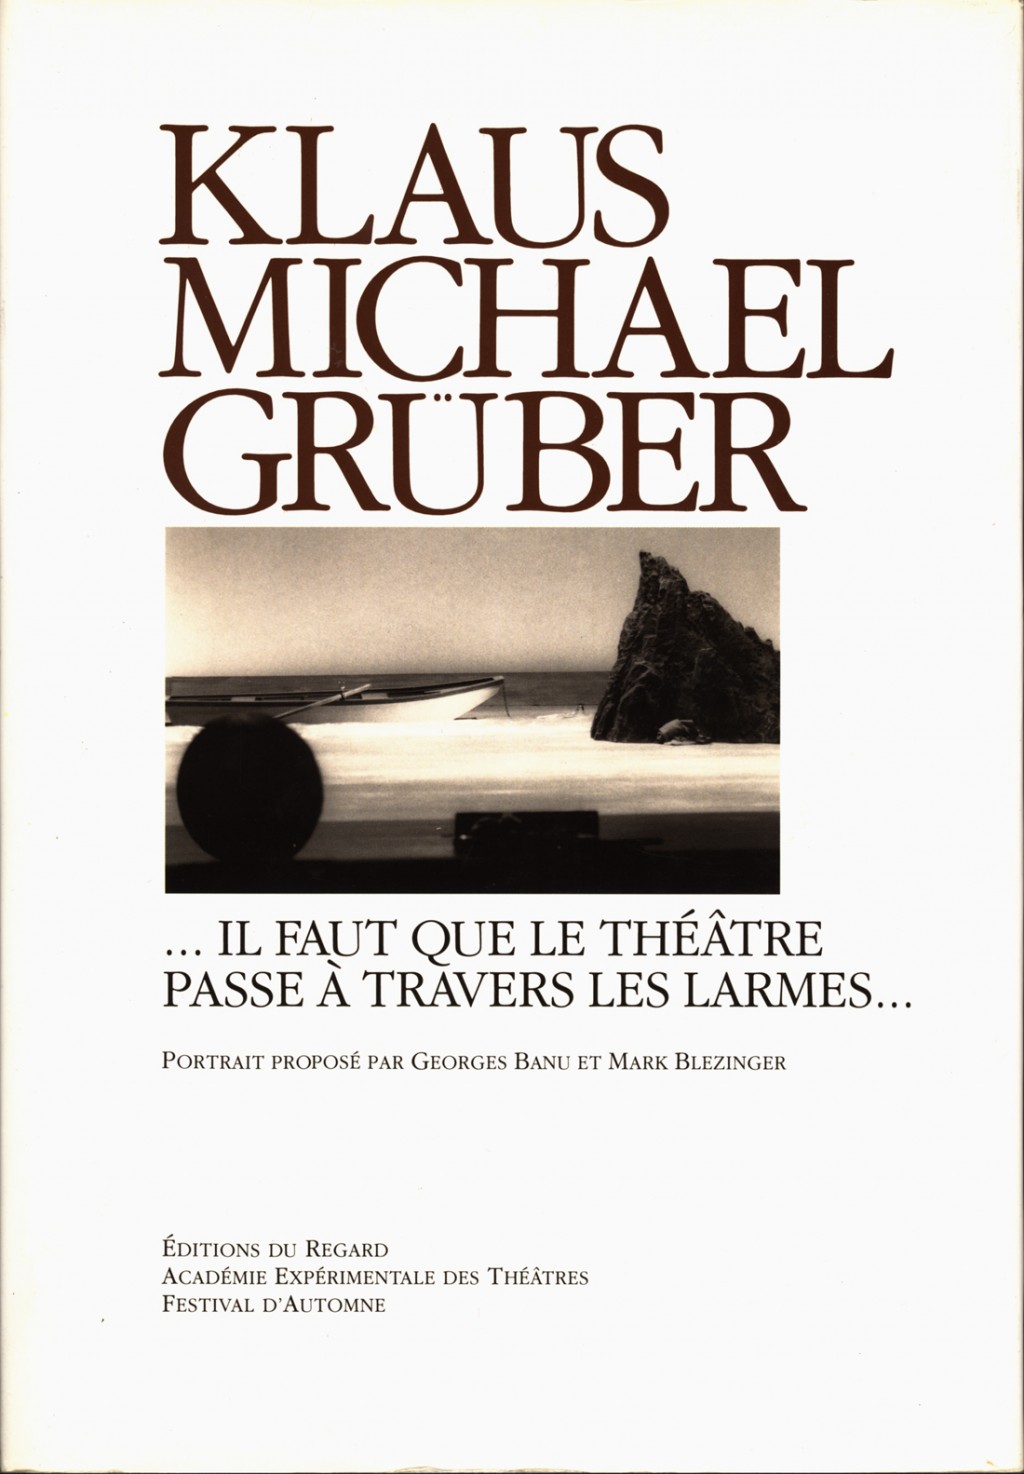 KLAUS MICHAEL GRÜBER - “...il faut que le Théâtre passe à travers les larmes...”